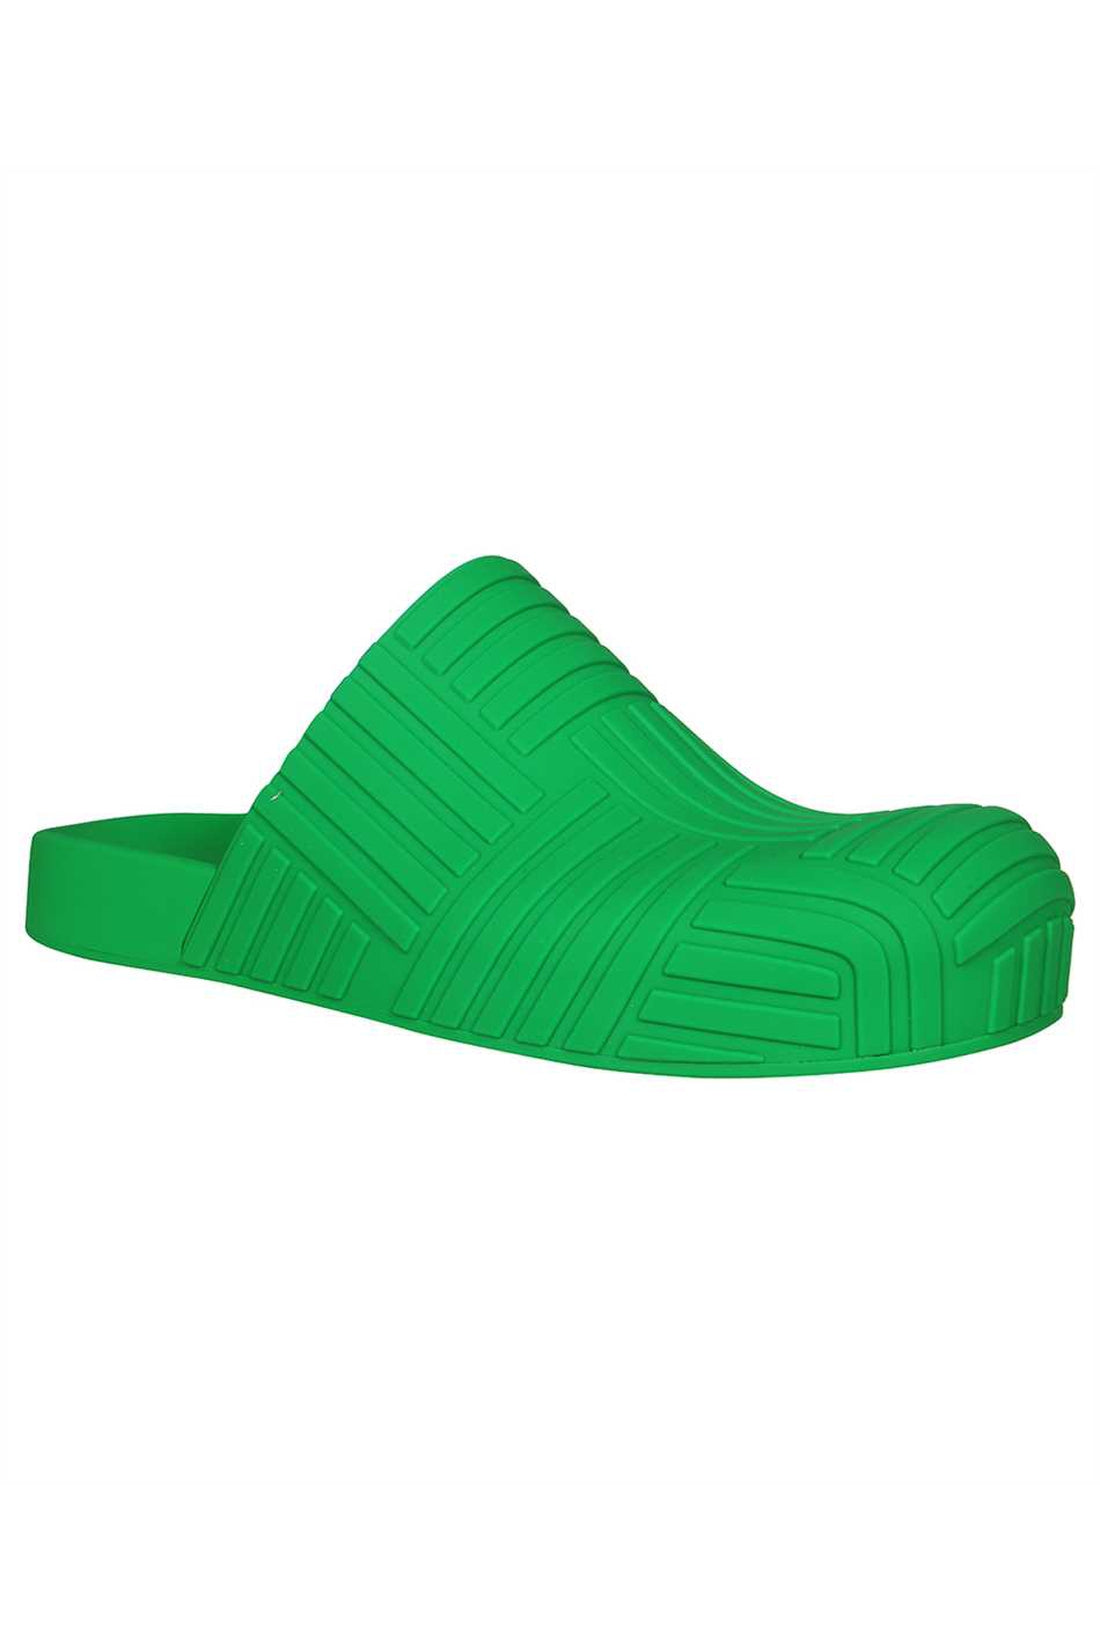 Bottega Veneta-OUTLET-SALE-Slider rubber slippers-ARCHIVIST